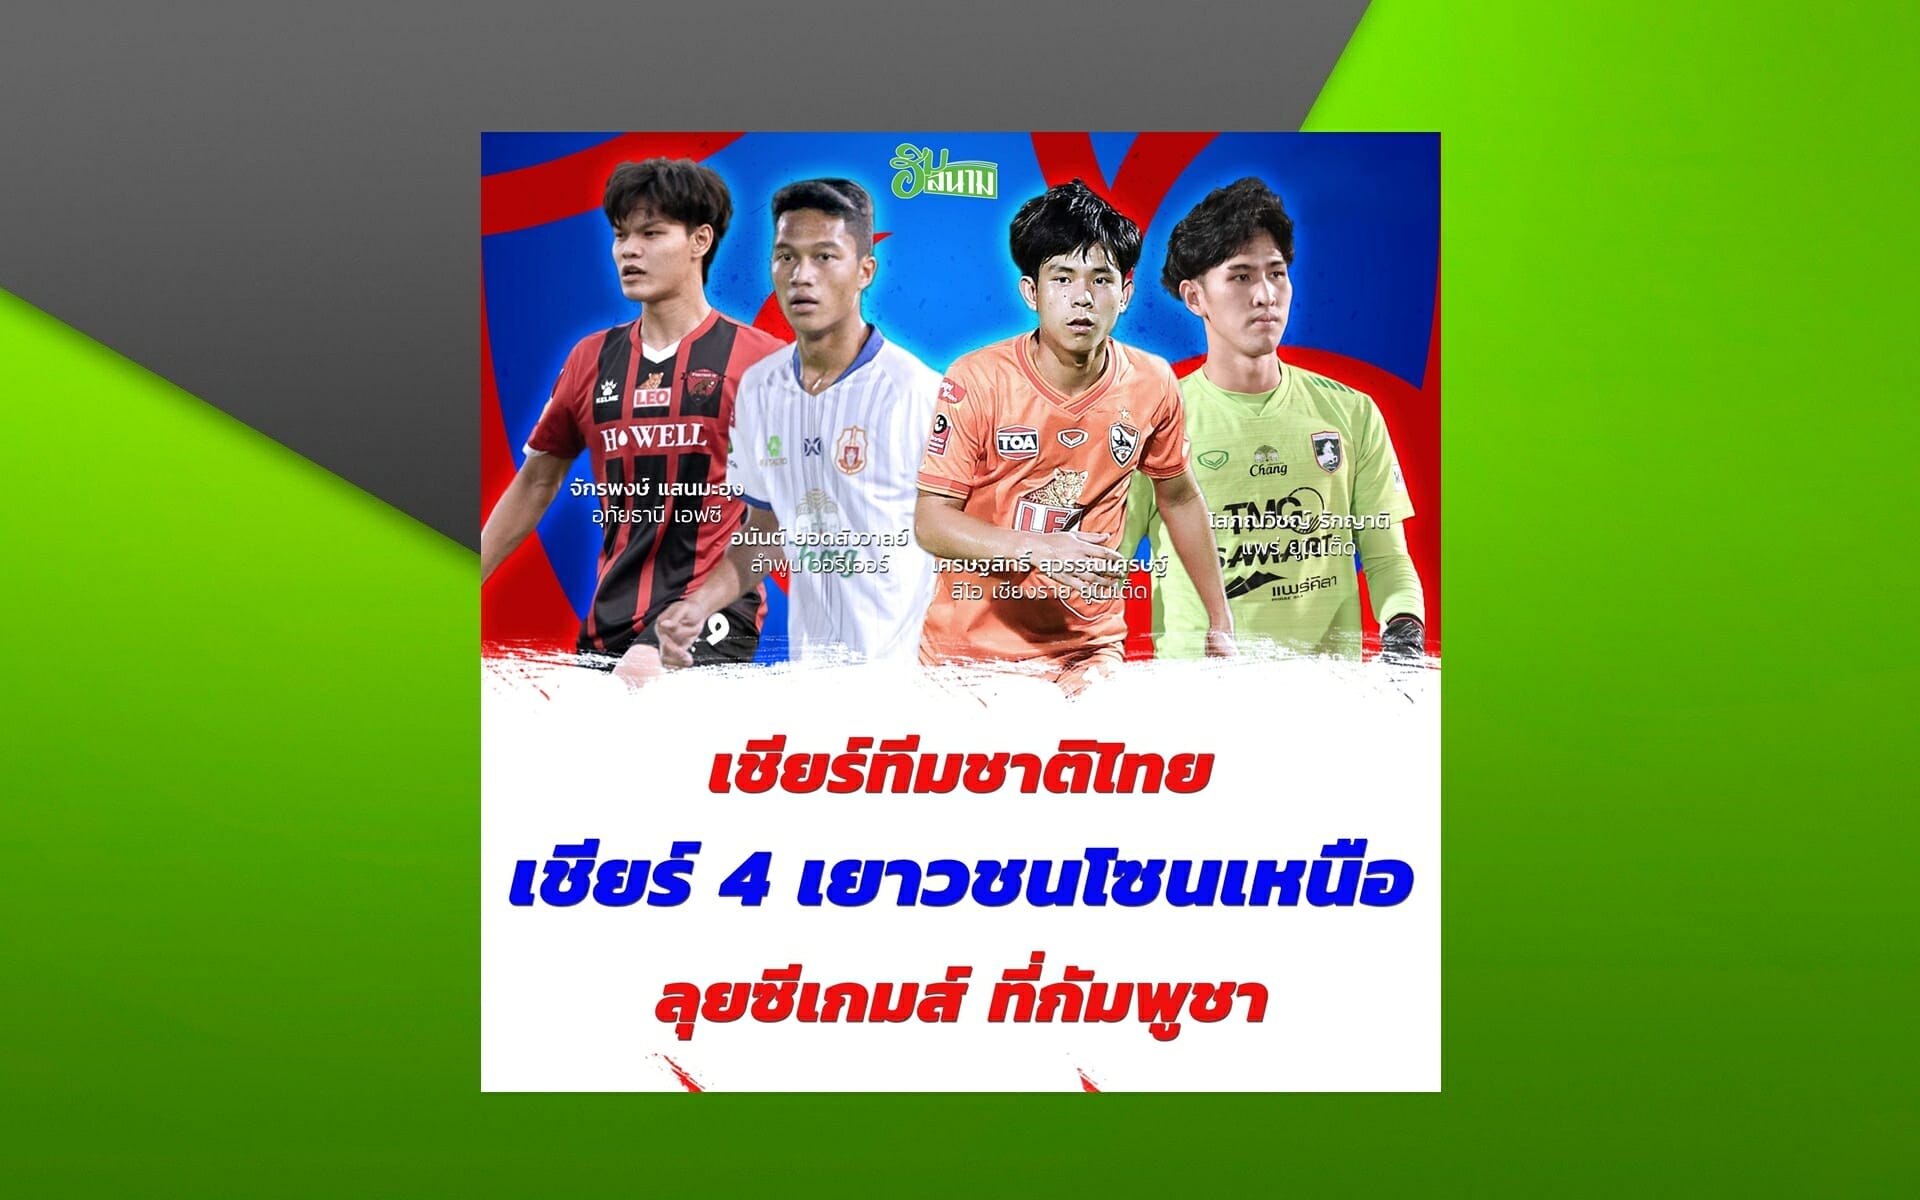 เชียร์ทีมชาติไทย เชียร์ 4 เยาวชนโซนเหนือลุยซีเกมส์ ที่กัมพูชา